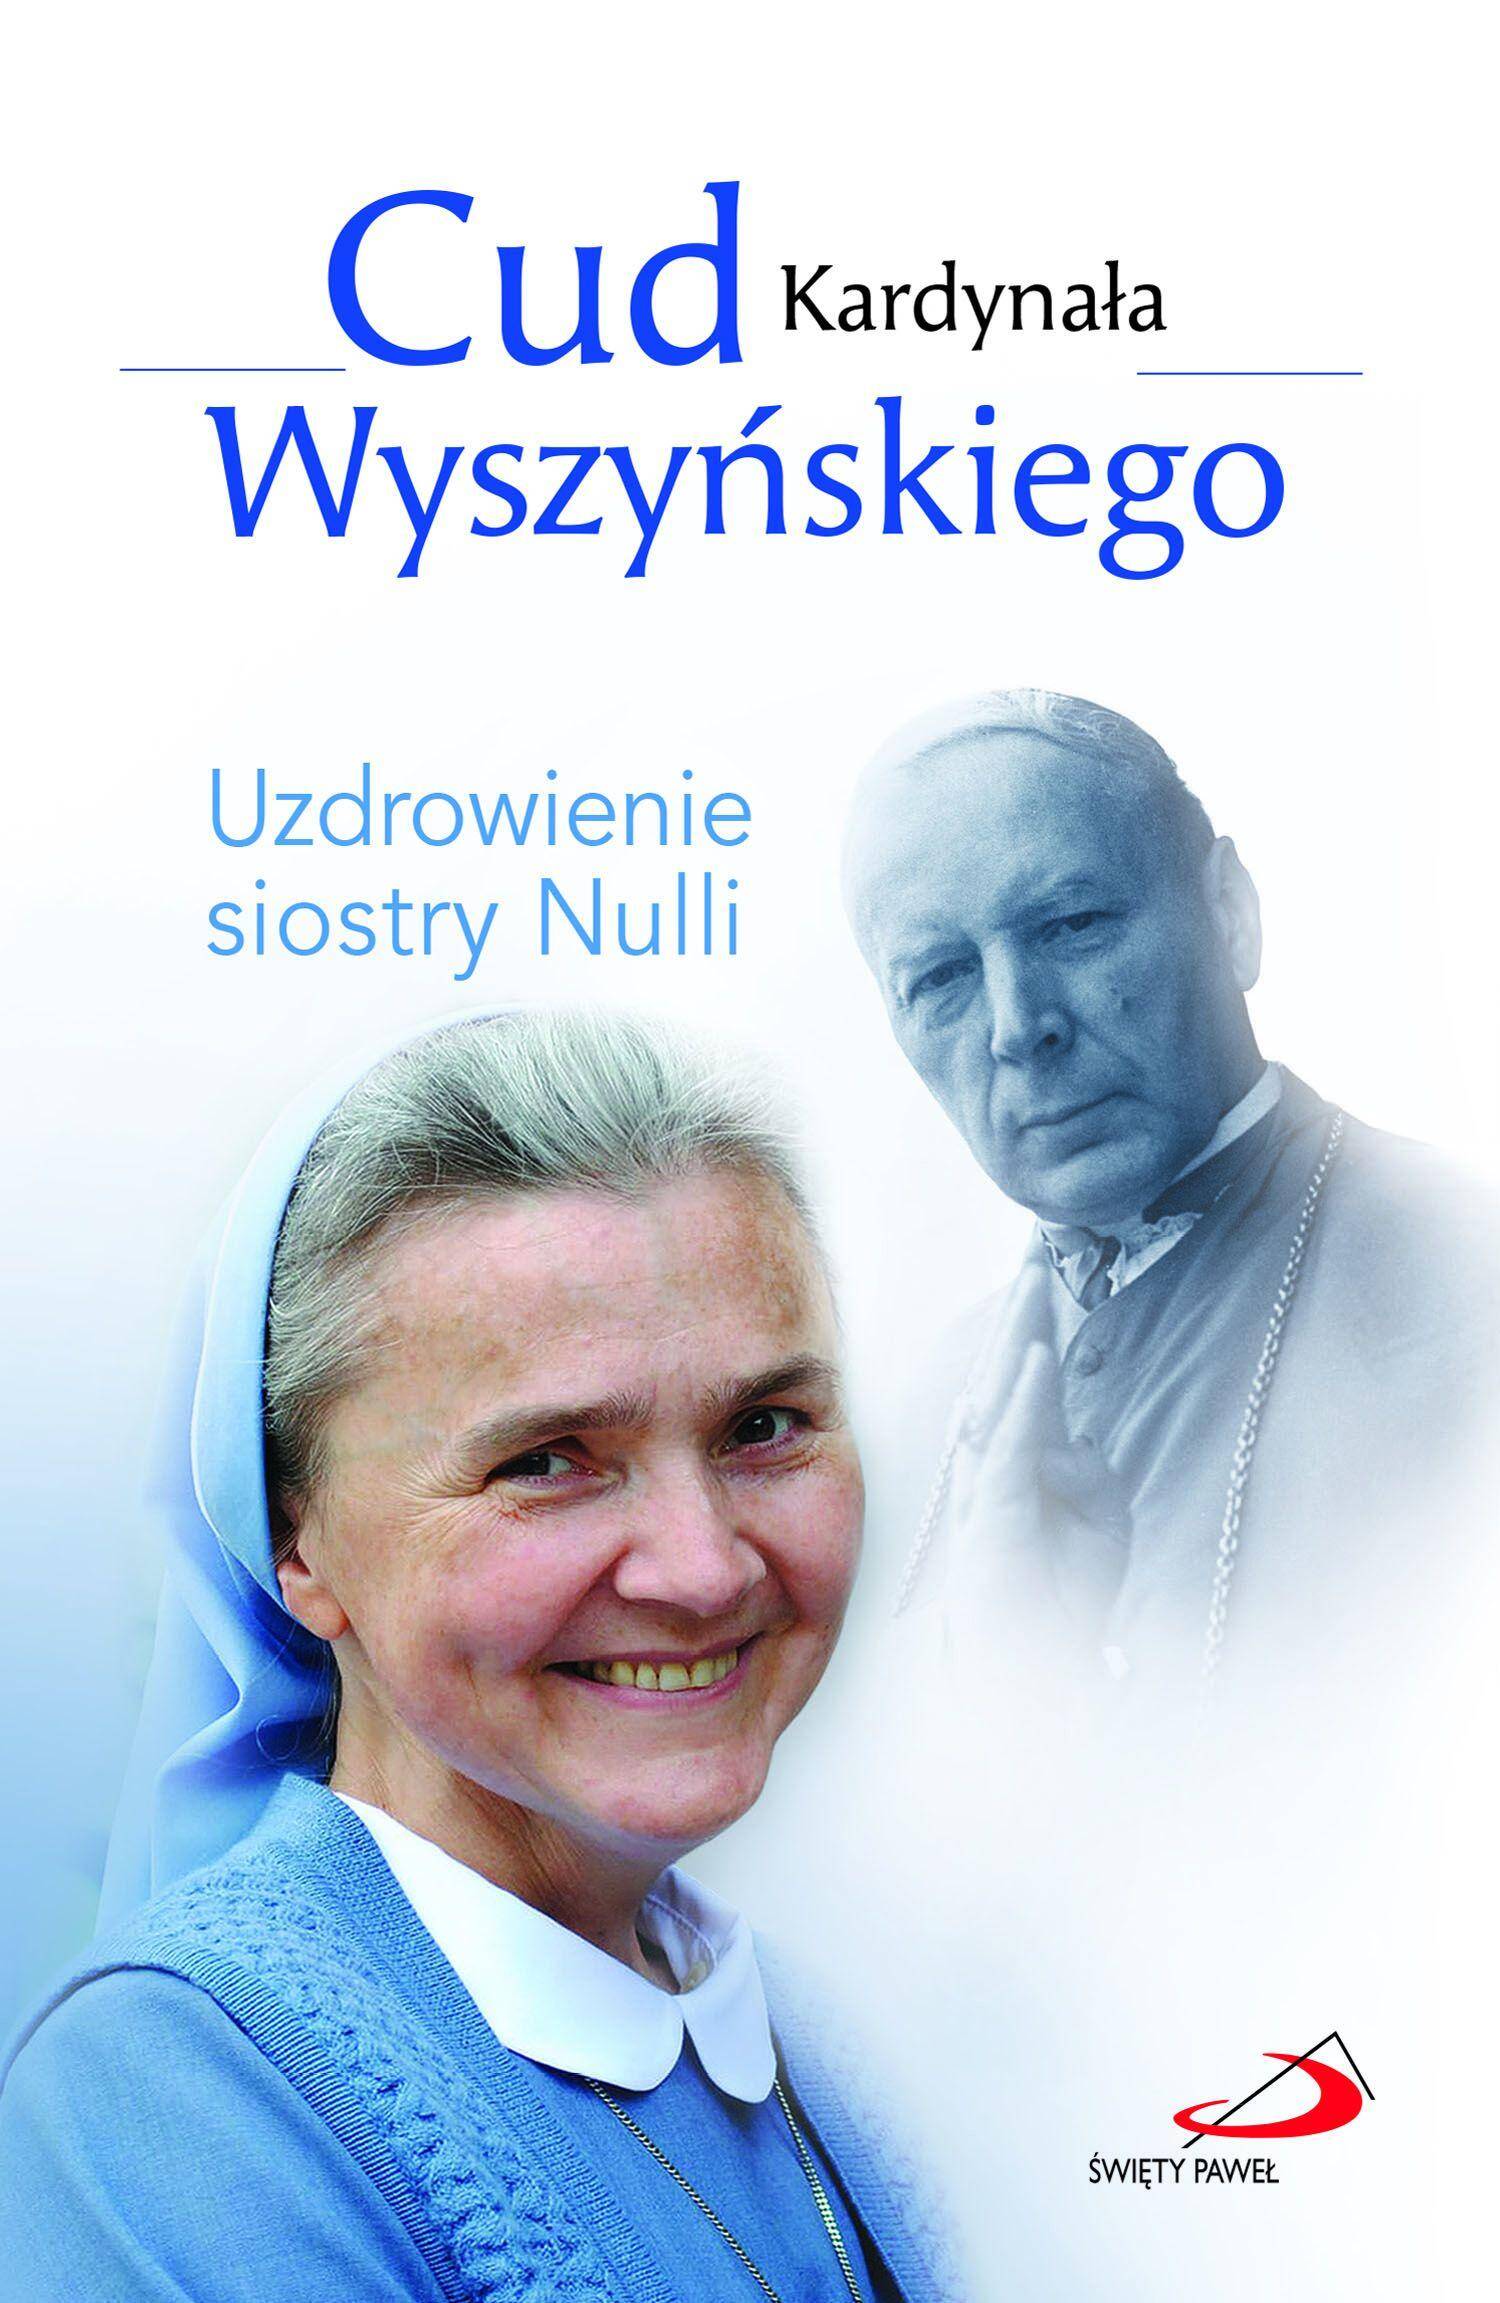 Cud kardynała Wyszyńskiego